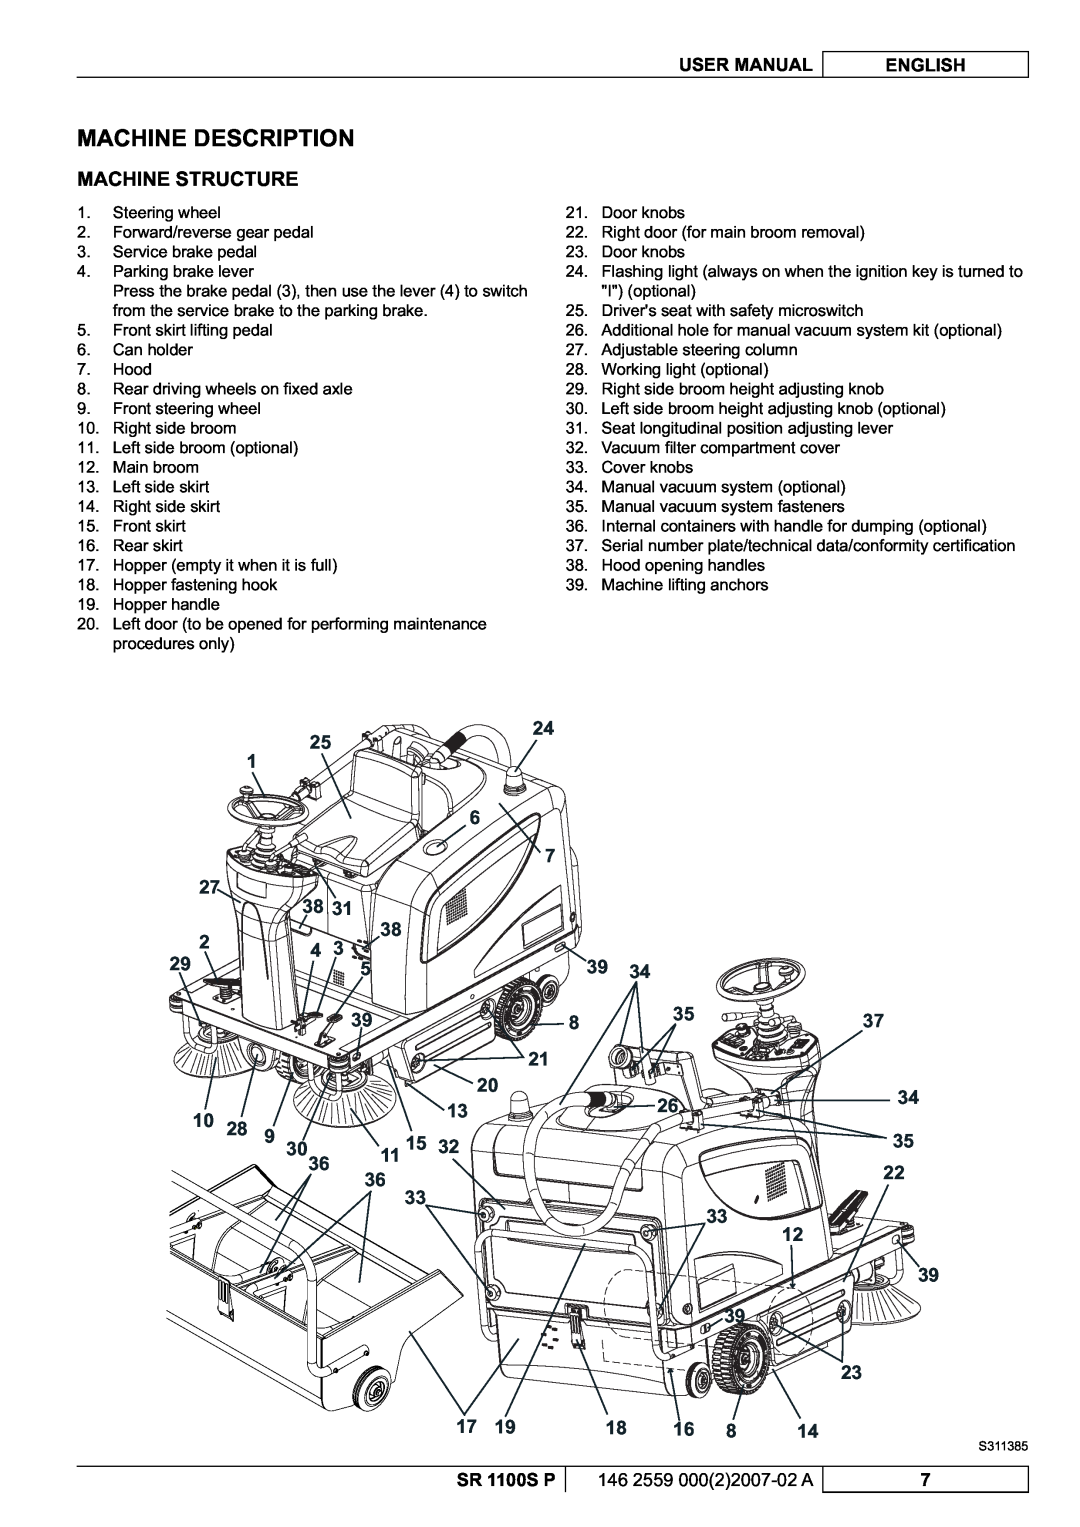 Nilfisk-Advance America SR 1100S manuel dutilisation Machine Description, Machine Structure, 39 39 23 